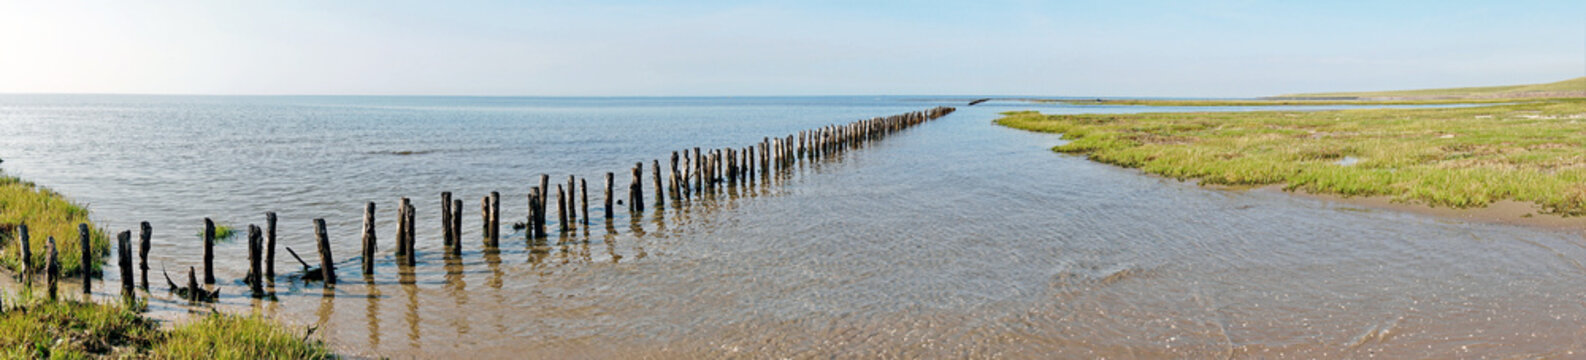 Deutschland Nordseeküste - Strand und Watt mit Buhnen in Norddeutschland an der Küste